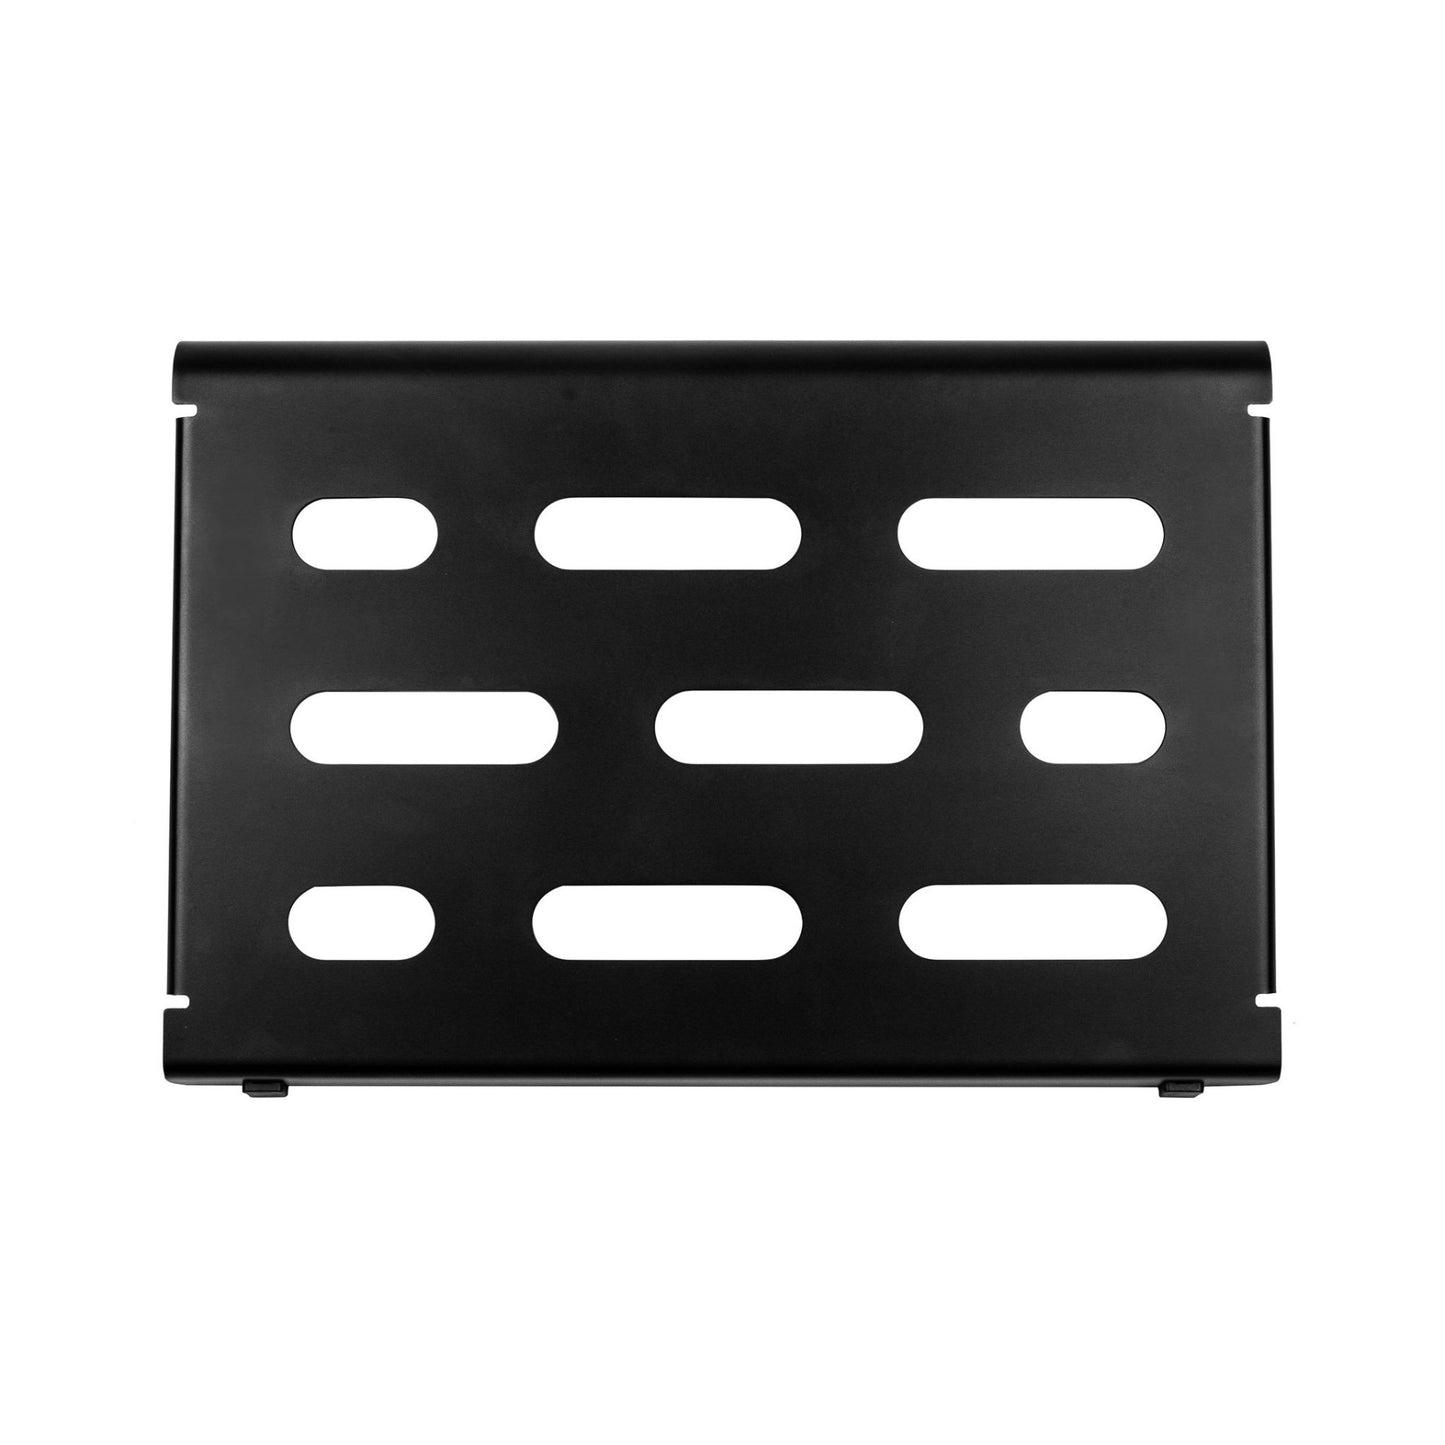 Mono Cases Pedalboard Small Black and Club Accessory Case 2.0 - Black